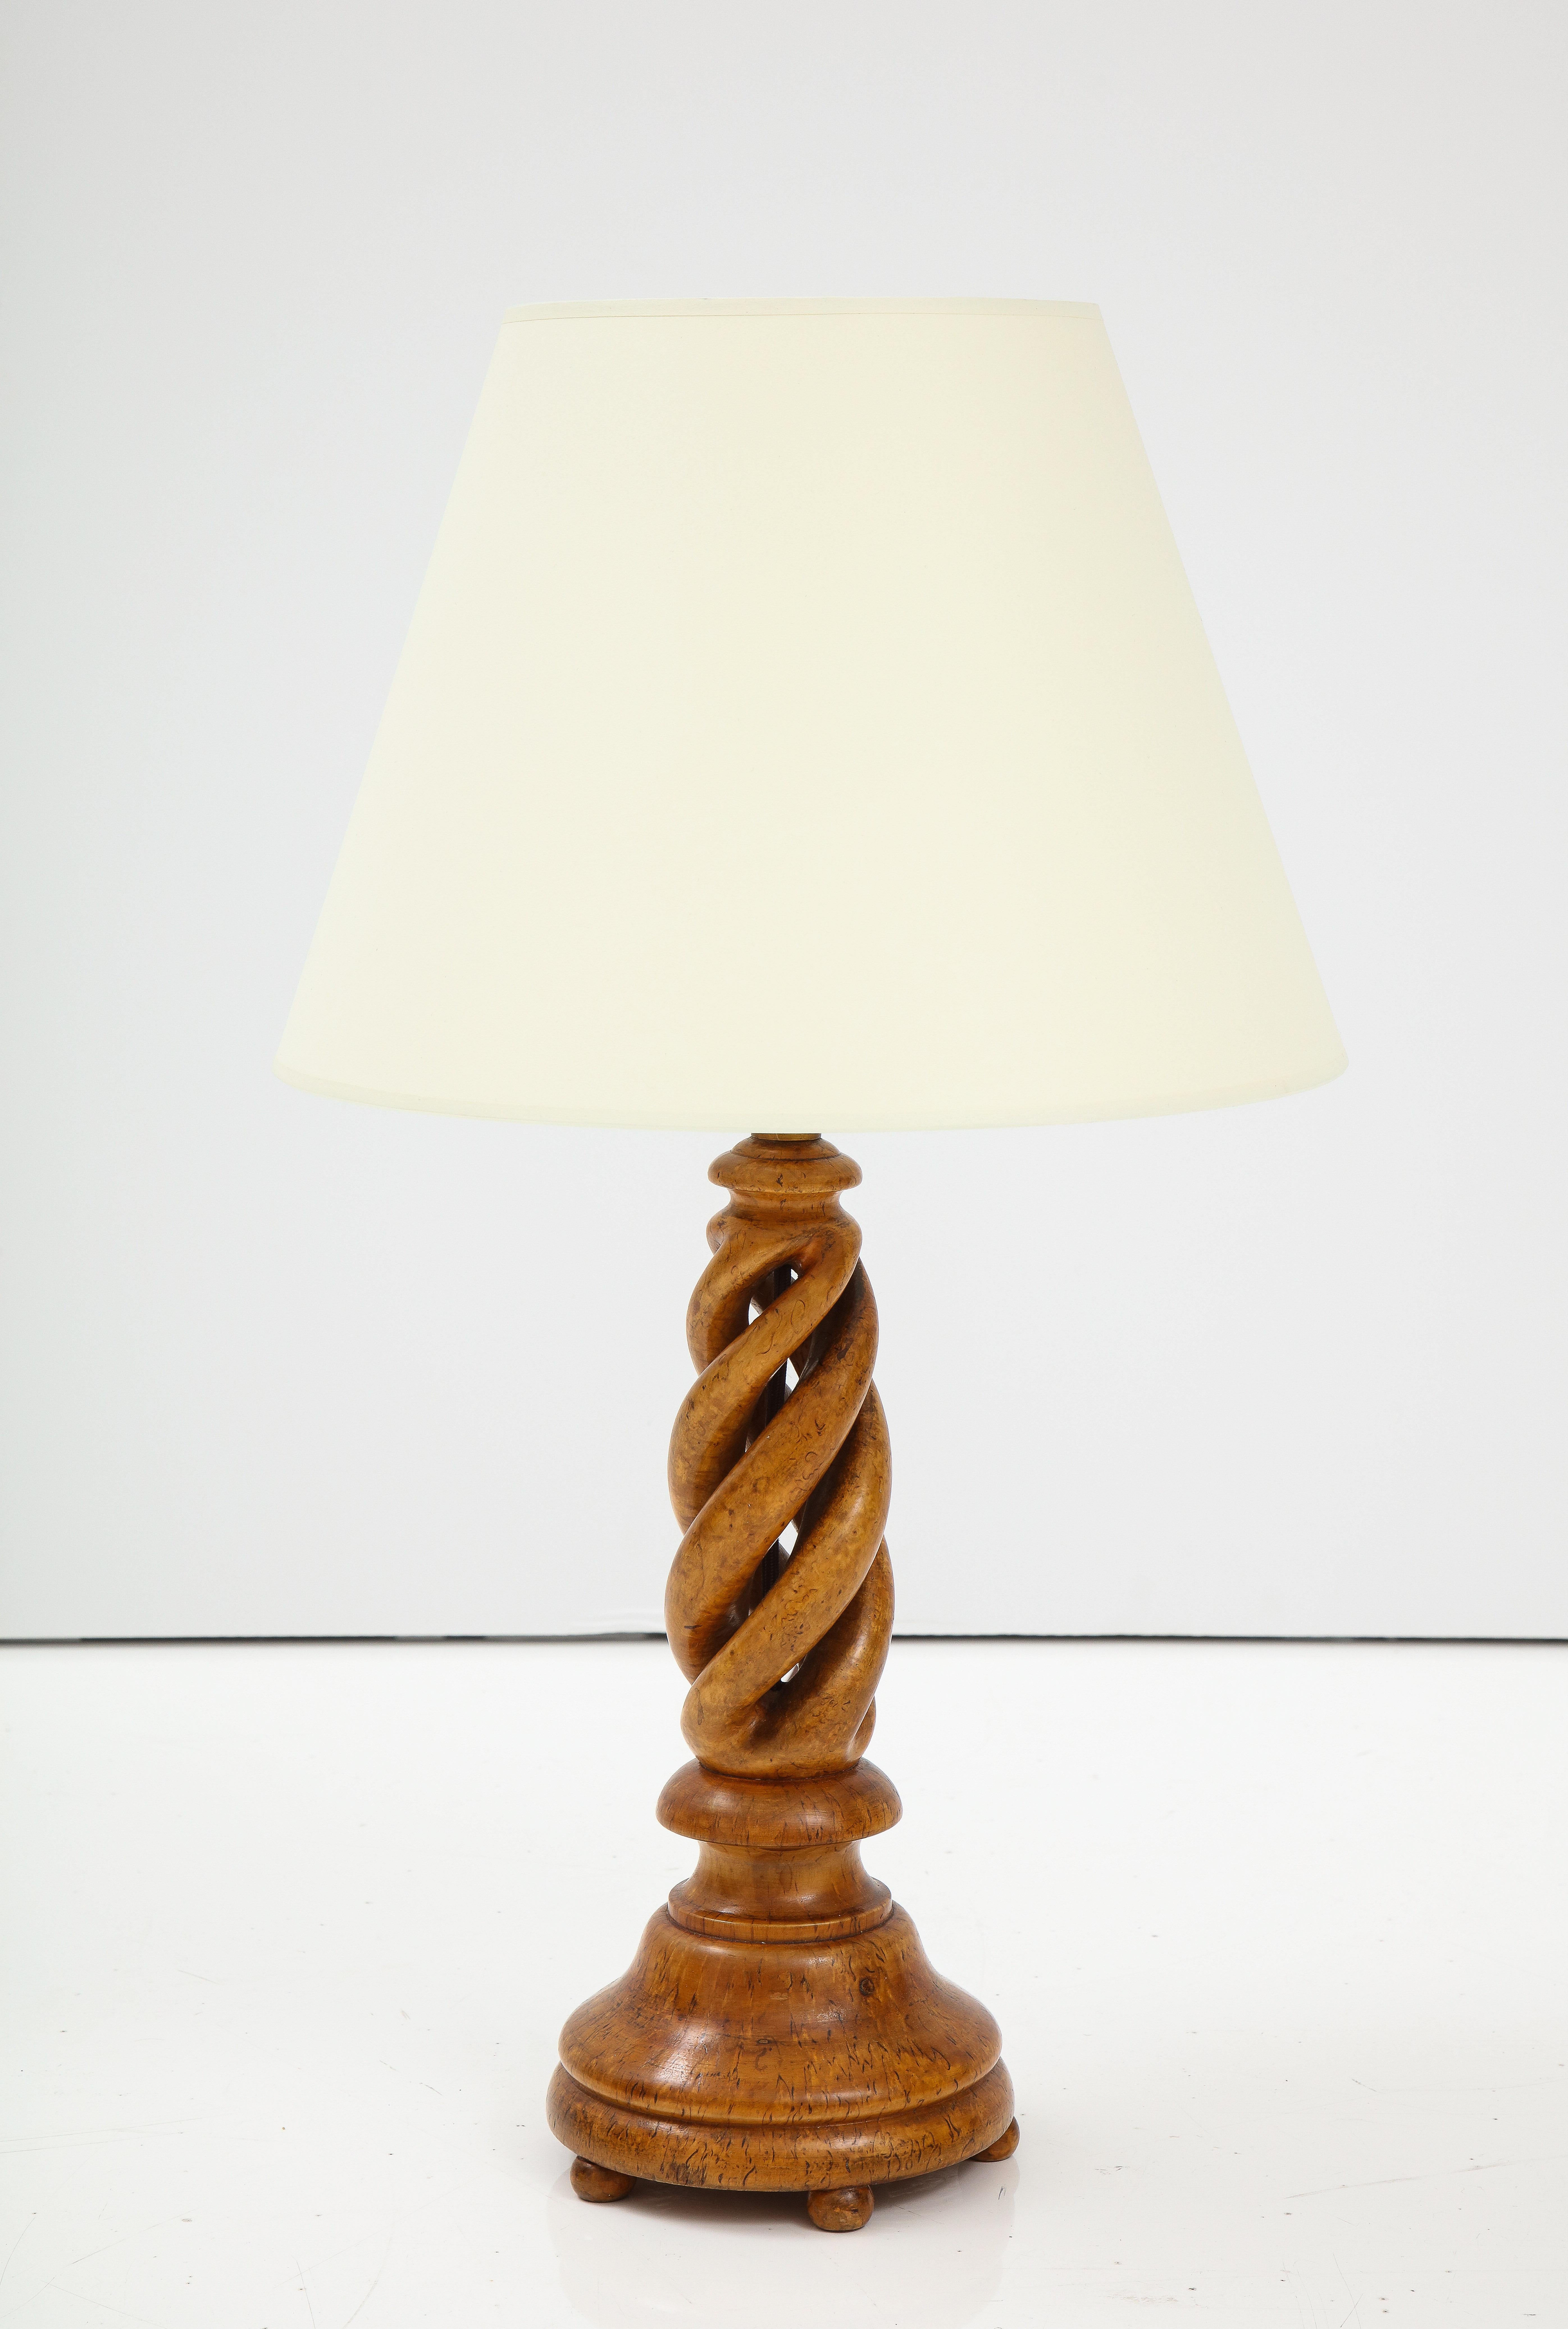 Lampe de table suédoise en racine de bouleau tournée, Circa 1960s, Superbe couleur et forme. Recâblé pour les États-Unis. 1 60watt max. Abat-jour neuf en papier blanc cassé.




